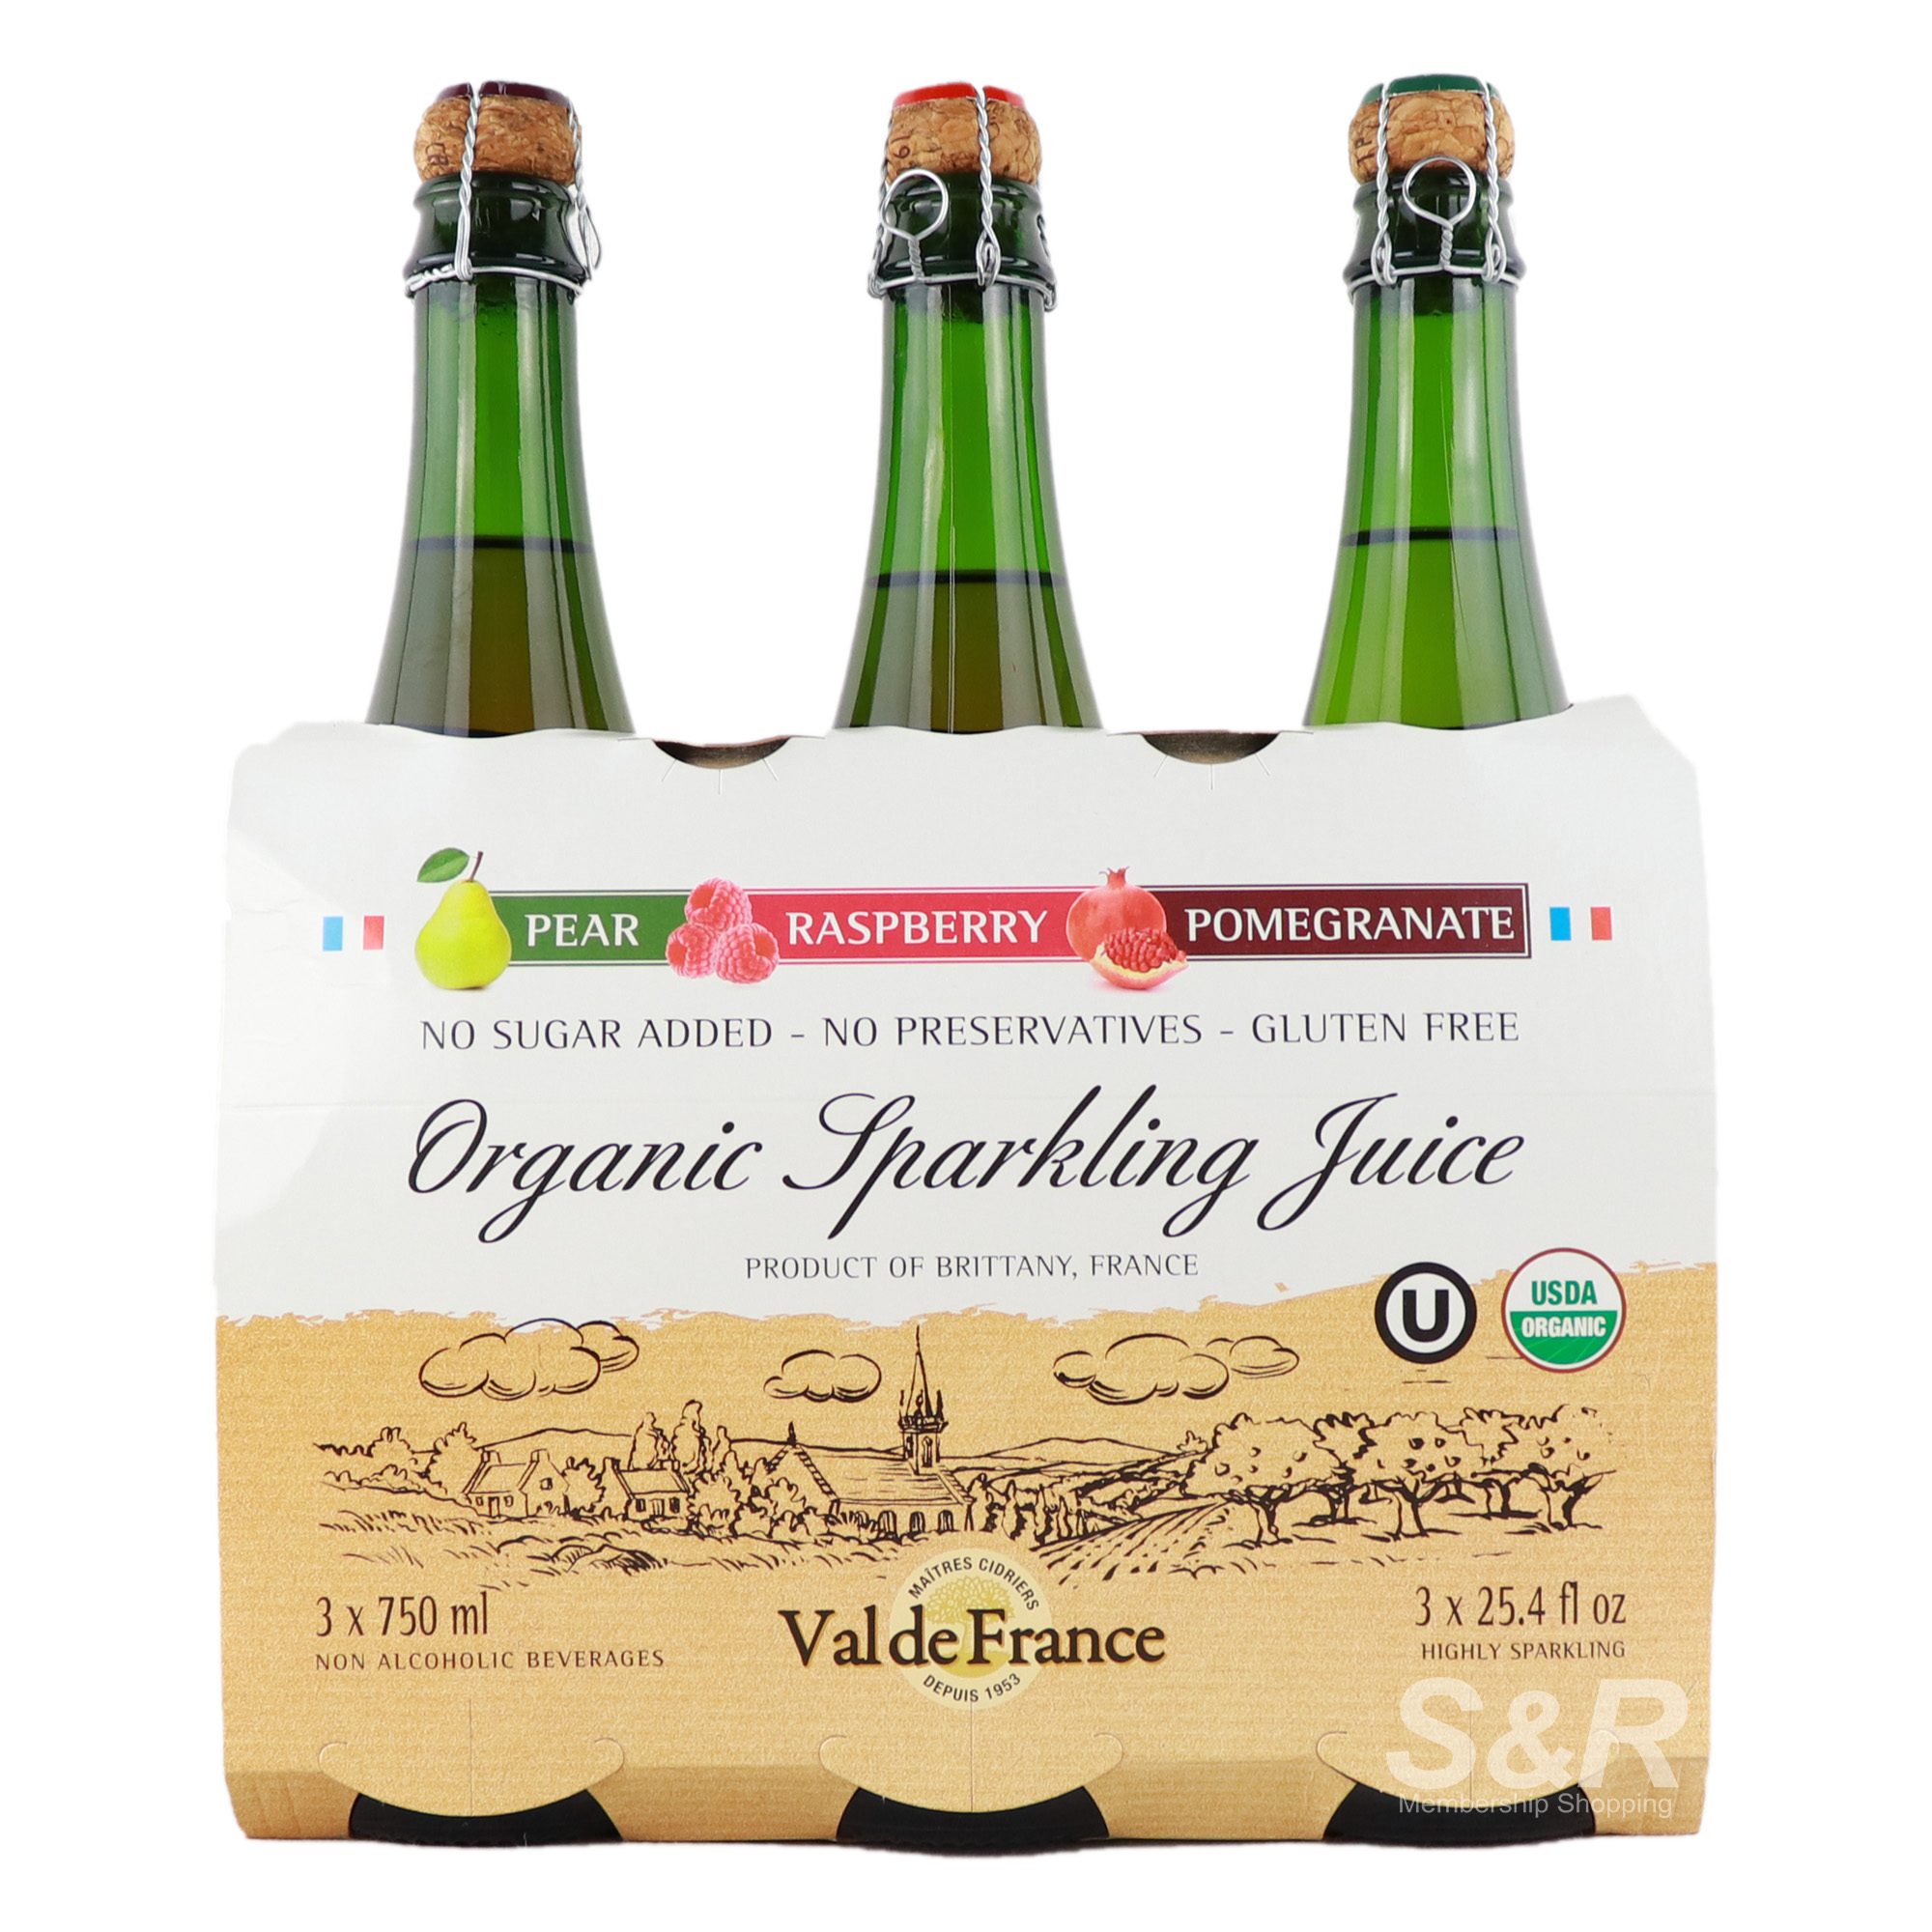 Val de France Organic Sparkling Juice 3 bottles